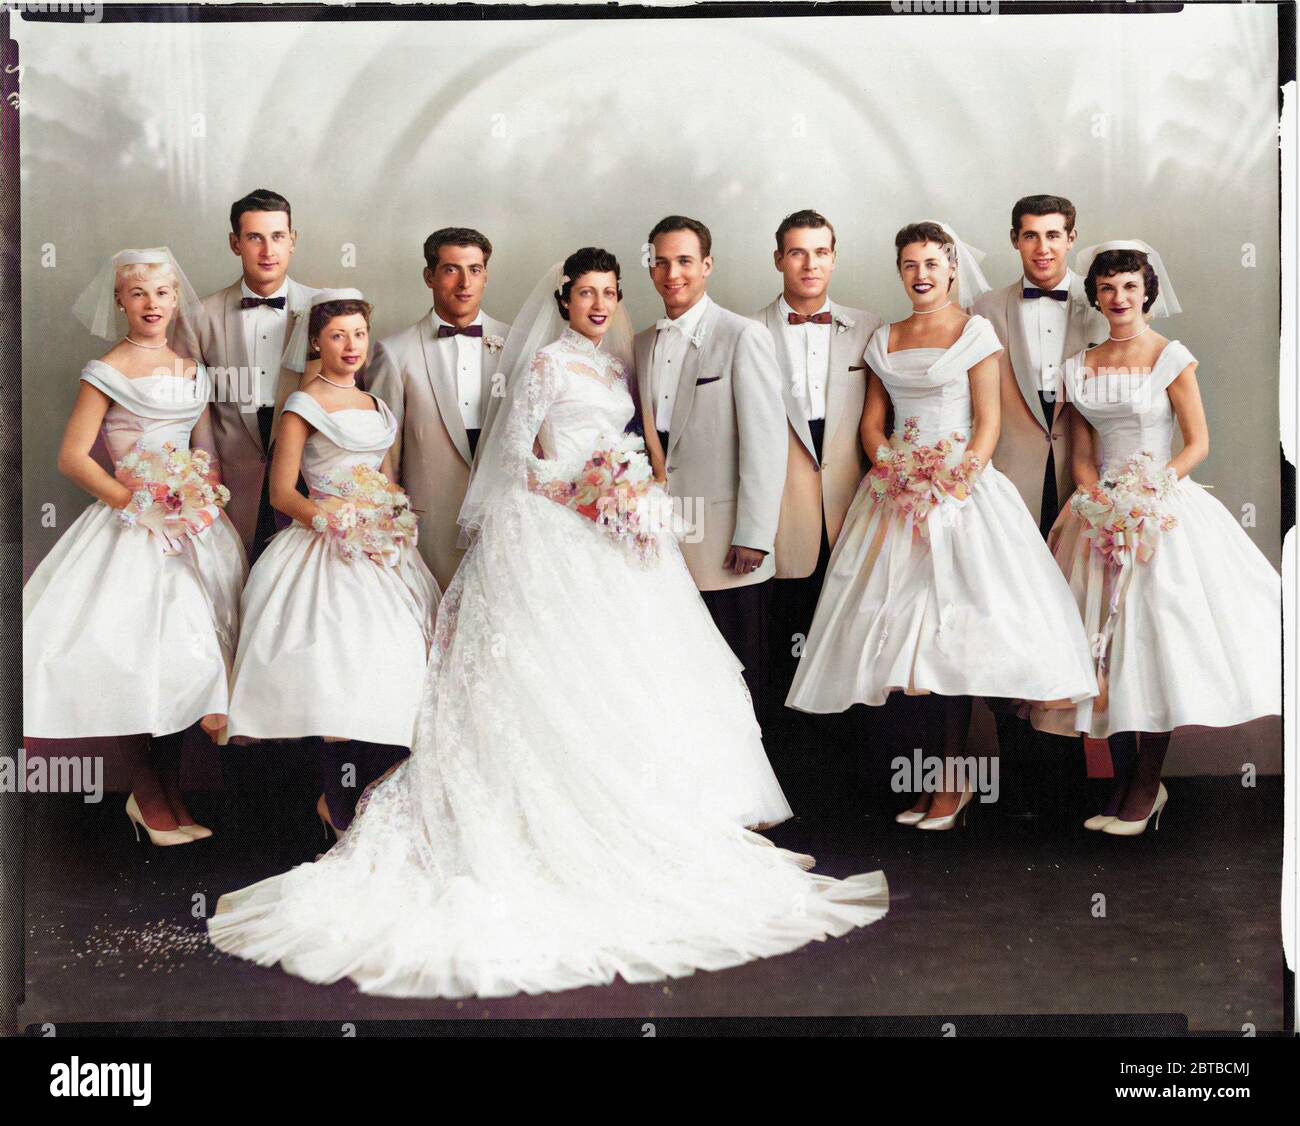 1958 ca, CHICAGO , USA  : A wedding dress of italian immigrants of 2nd generation born in USA . Photo by Universal Studio , Chicago . COLORIZED DIGITALLY . - NOZZE - abito da SPOSA - WEDDING dress PARTY - BRIDE -  cerimonia   - FOTO STORICHE - HISTORY PHOTOS - XX CENTURY - NOVECENTO  - thulle - tulle - strascico  - FAMIGLIA - FAMILY - PARENTI - festa - party - ricevimento  - velo - veil - flowers - fiori - fiore - carnations - garofano - garofani  - IMMIGRATI ITALIANI - ITALO-AMERICANI - seconda generazione - smile - sorriso - papillon - tie bow - cravatta - white dress - abito vestito bianco Stock Photo